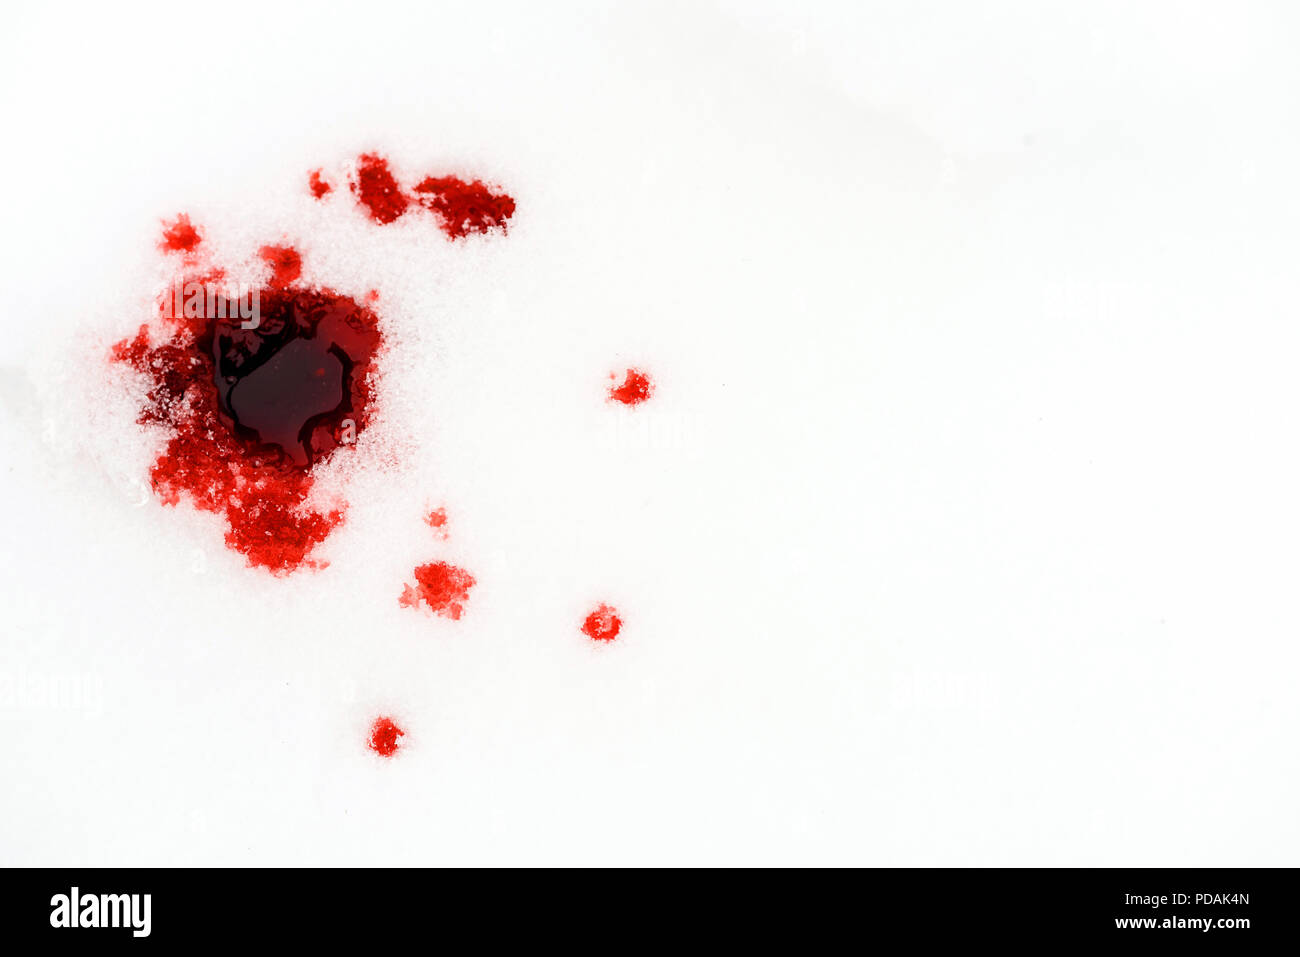 Sang rouge neige blanche tombe sur un arrière-plan d'un accident de chasse ou de crime la scène reliée Banque D'Images